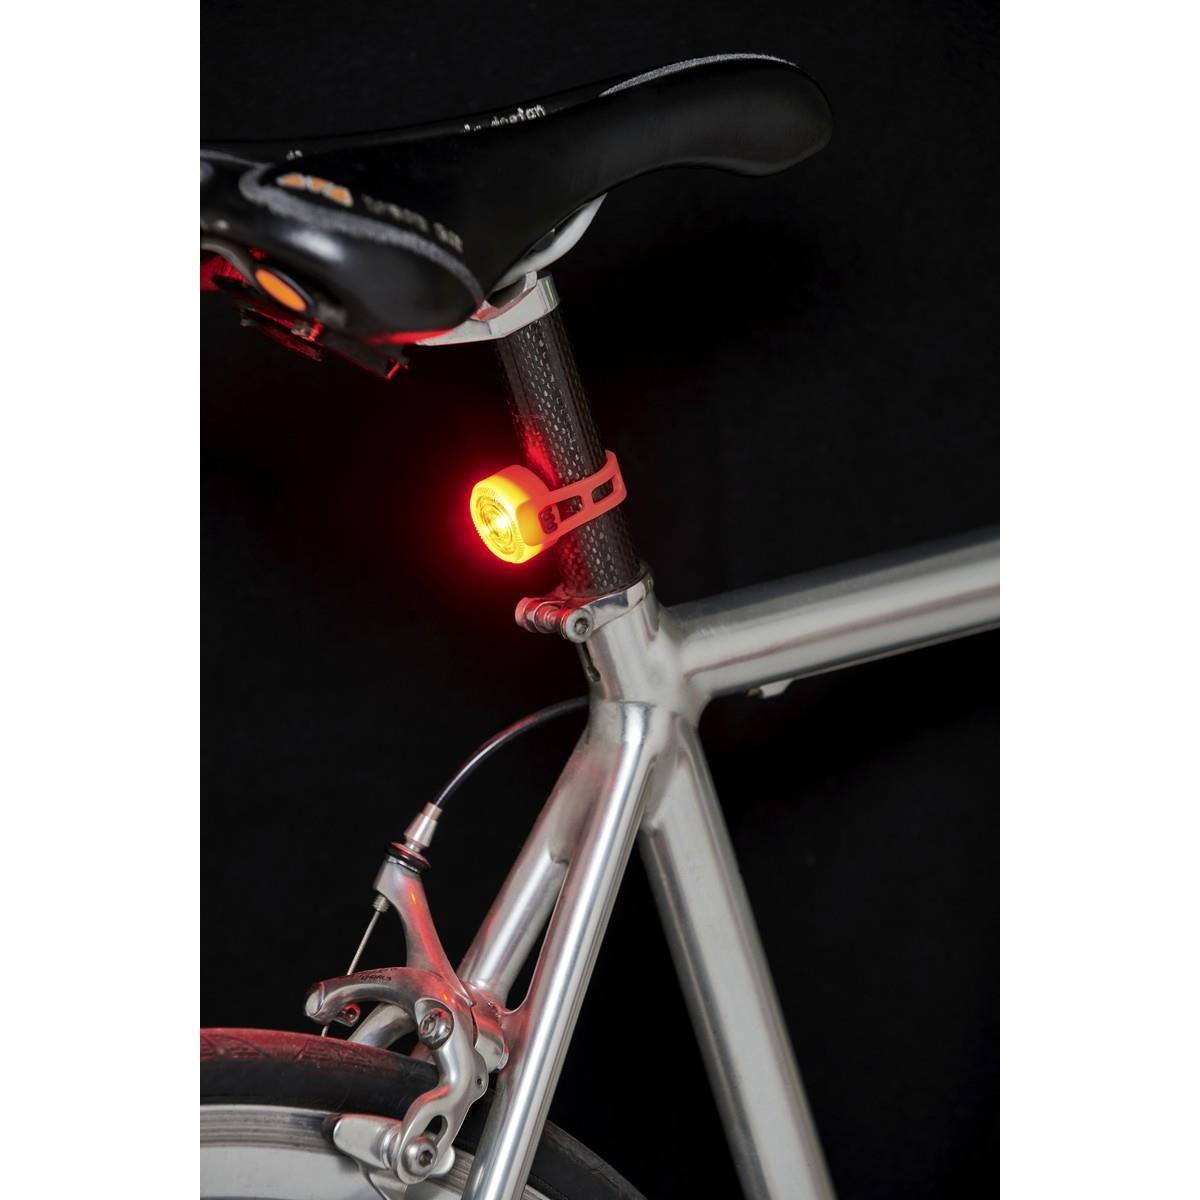 Leuchtenset Vorne und Hinten für Fahrräder